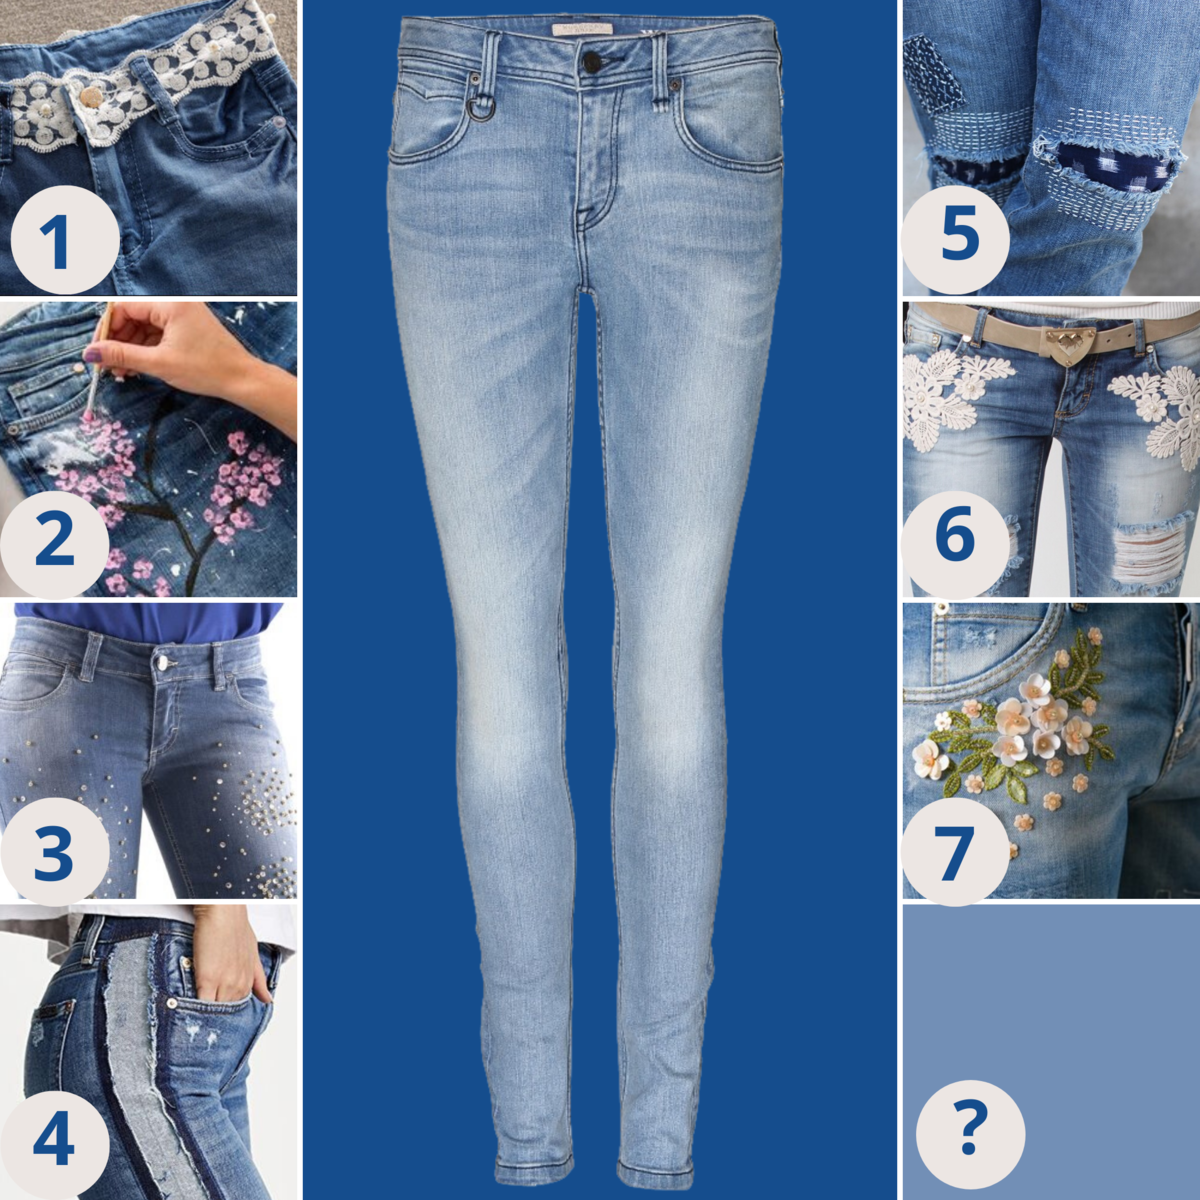 Как отбелить джинсы: обзор эффективных методов